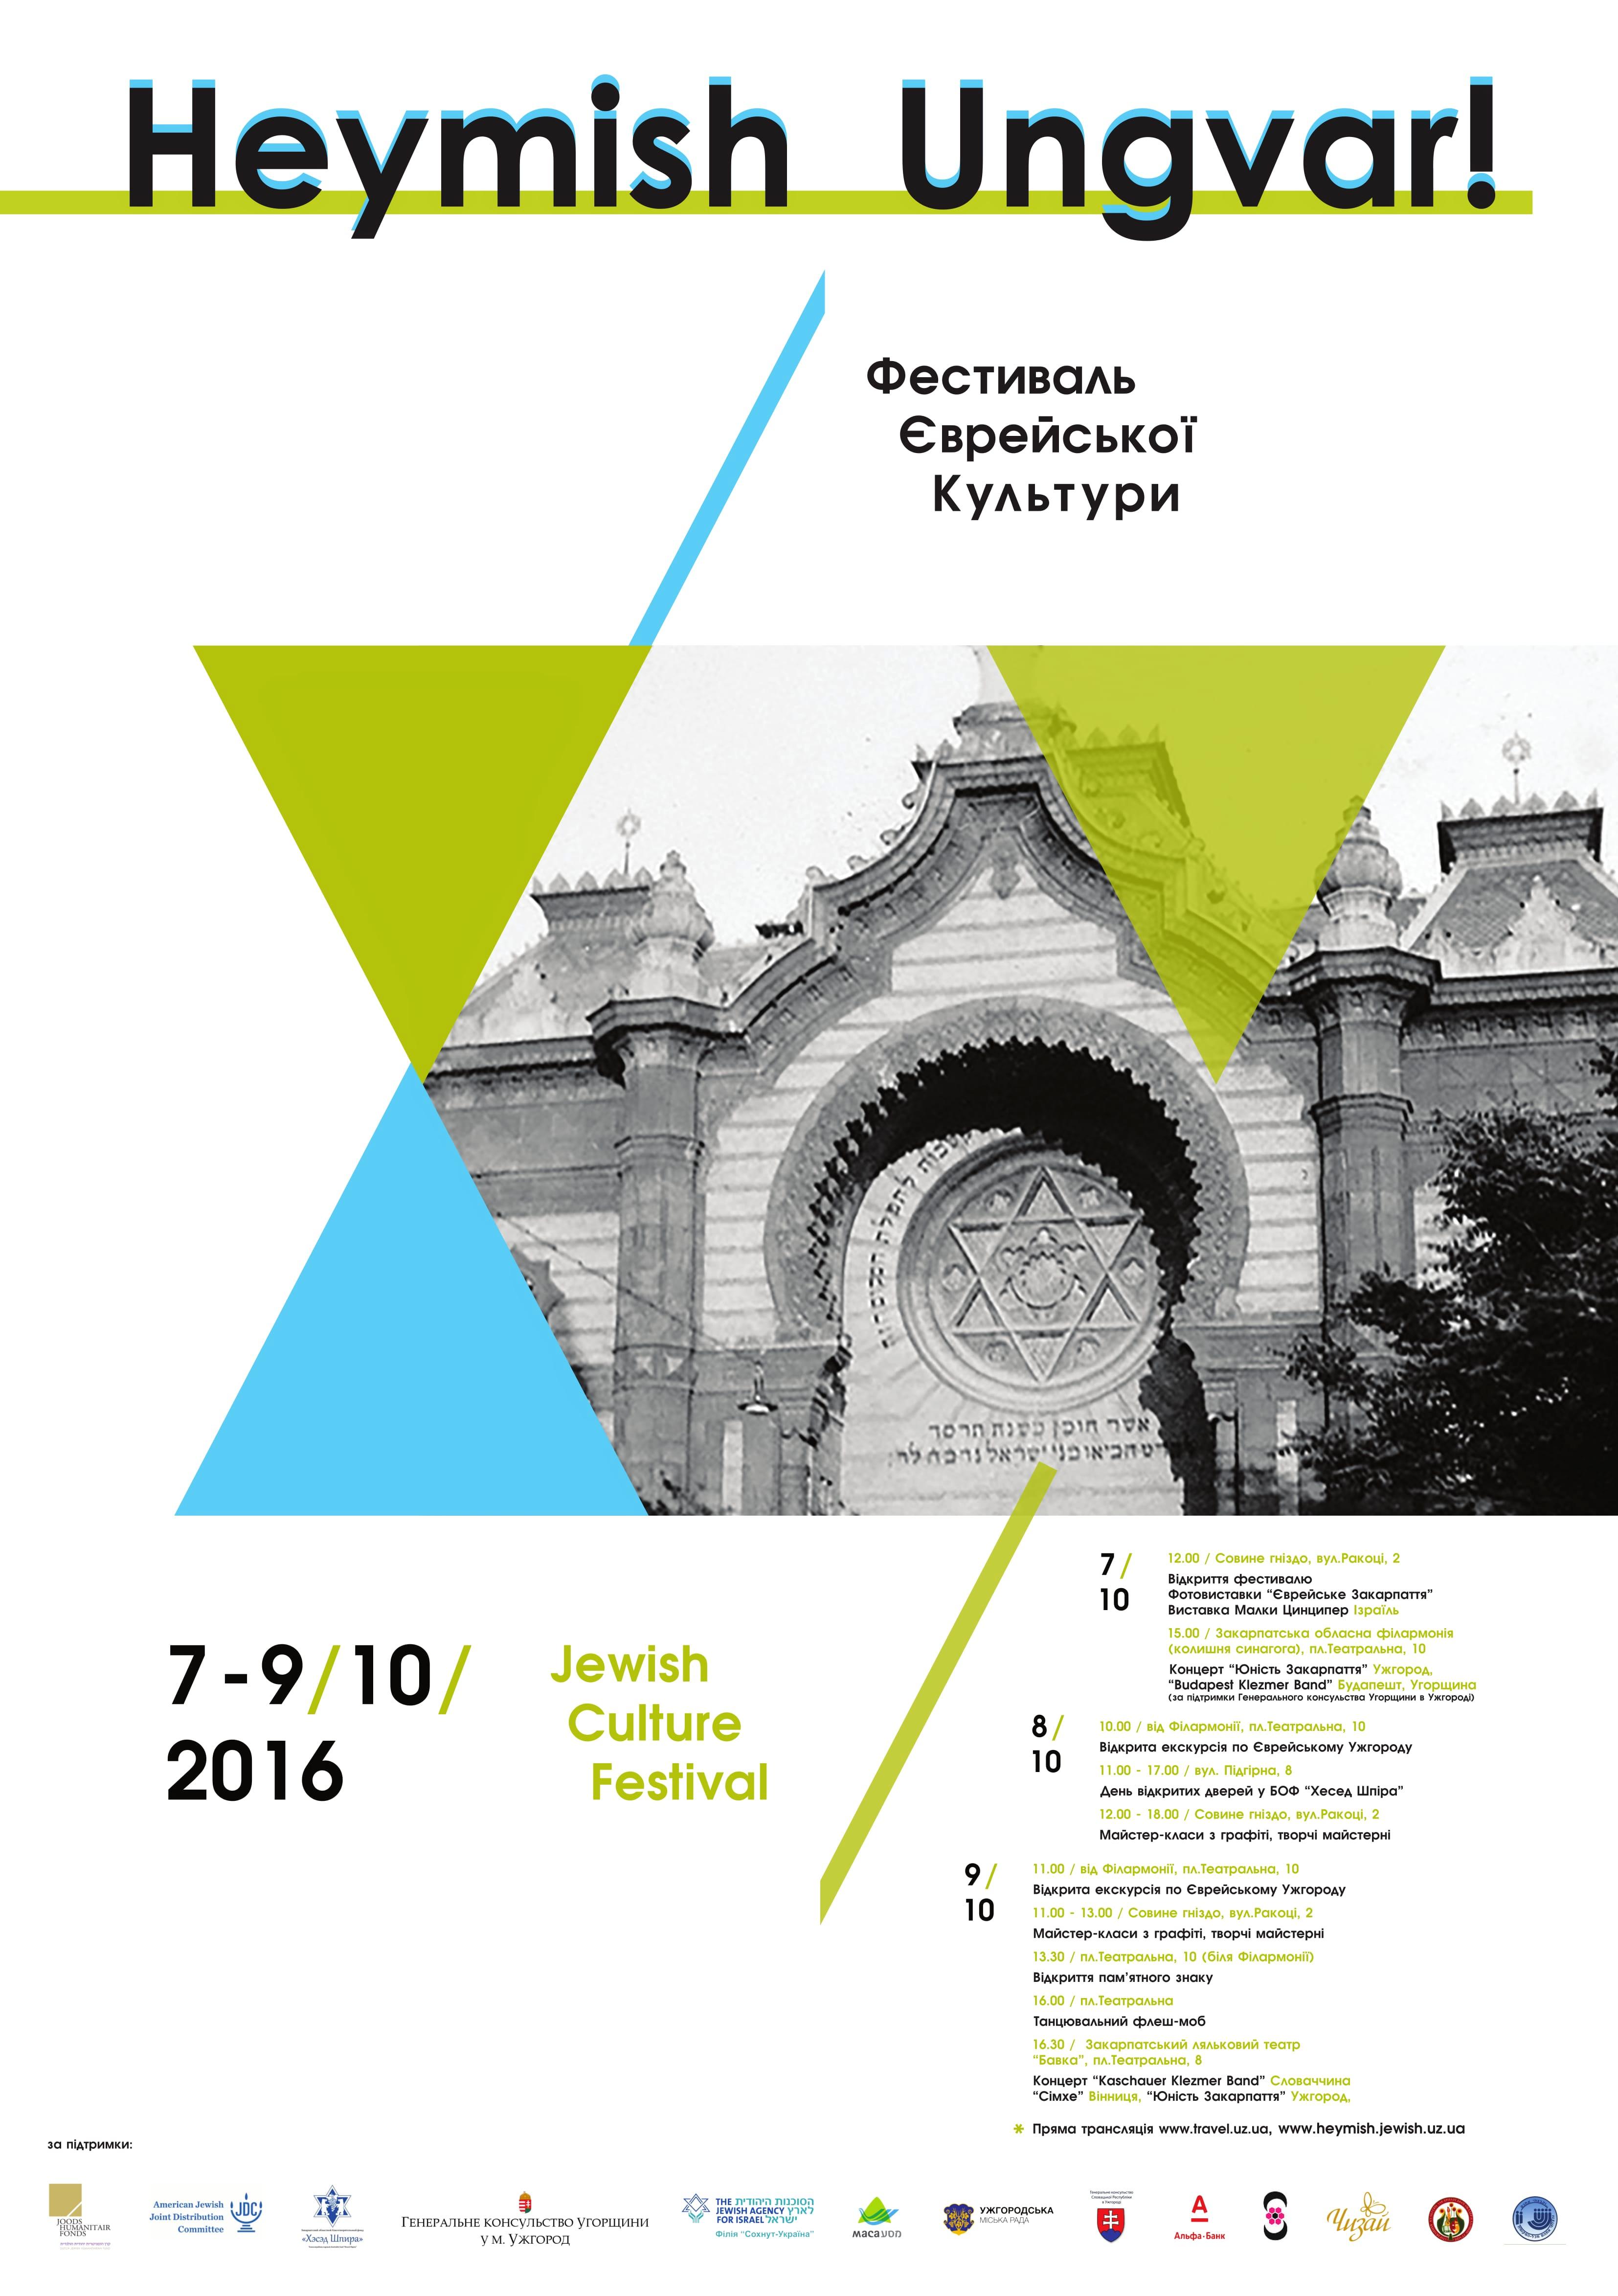 В рамках відзначення Днів єврейської культури з 7 по 9 жовтня в обласному центрі проходитиме тематичний фестиваль.